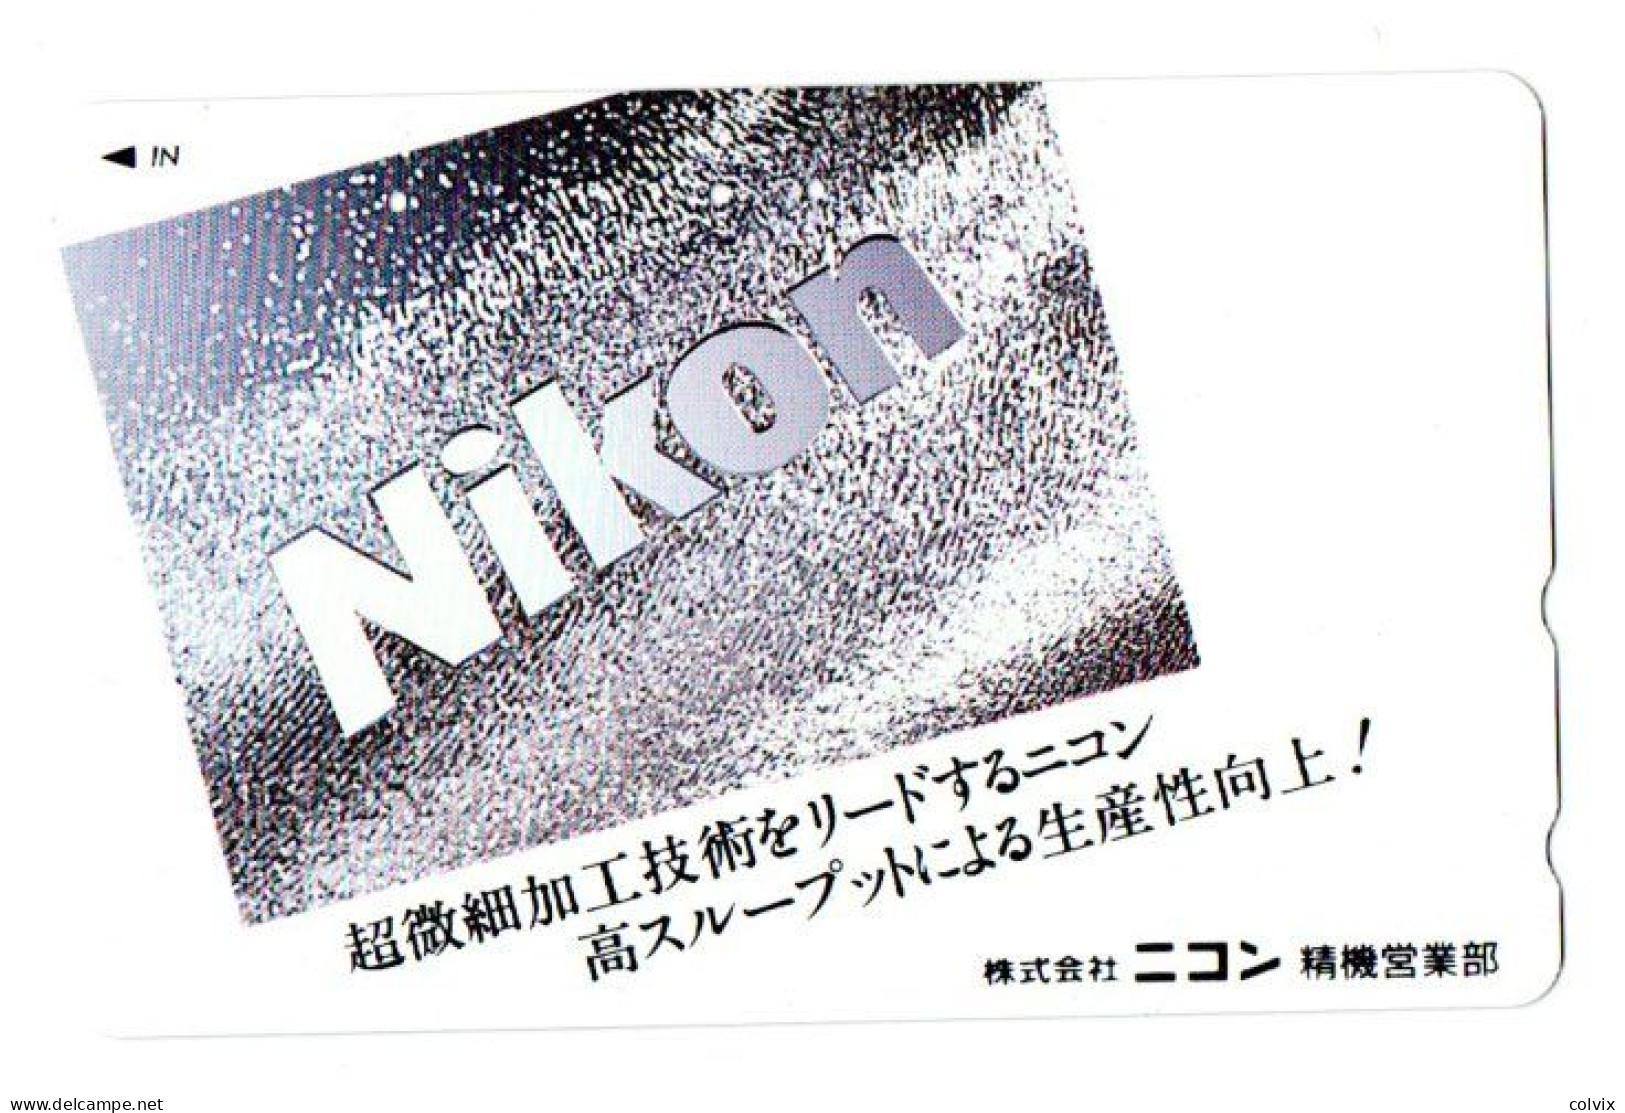 TELECARTE JAPON PHOTO NIKON - Advertising